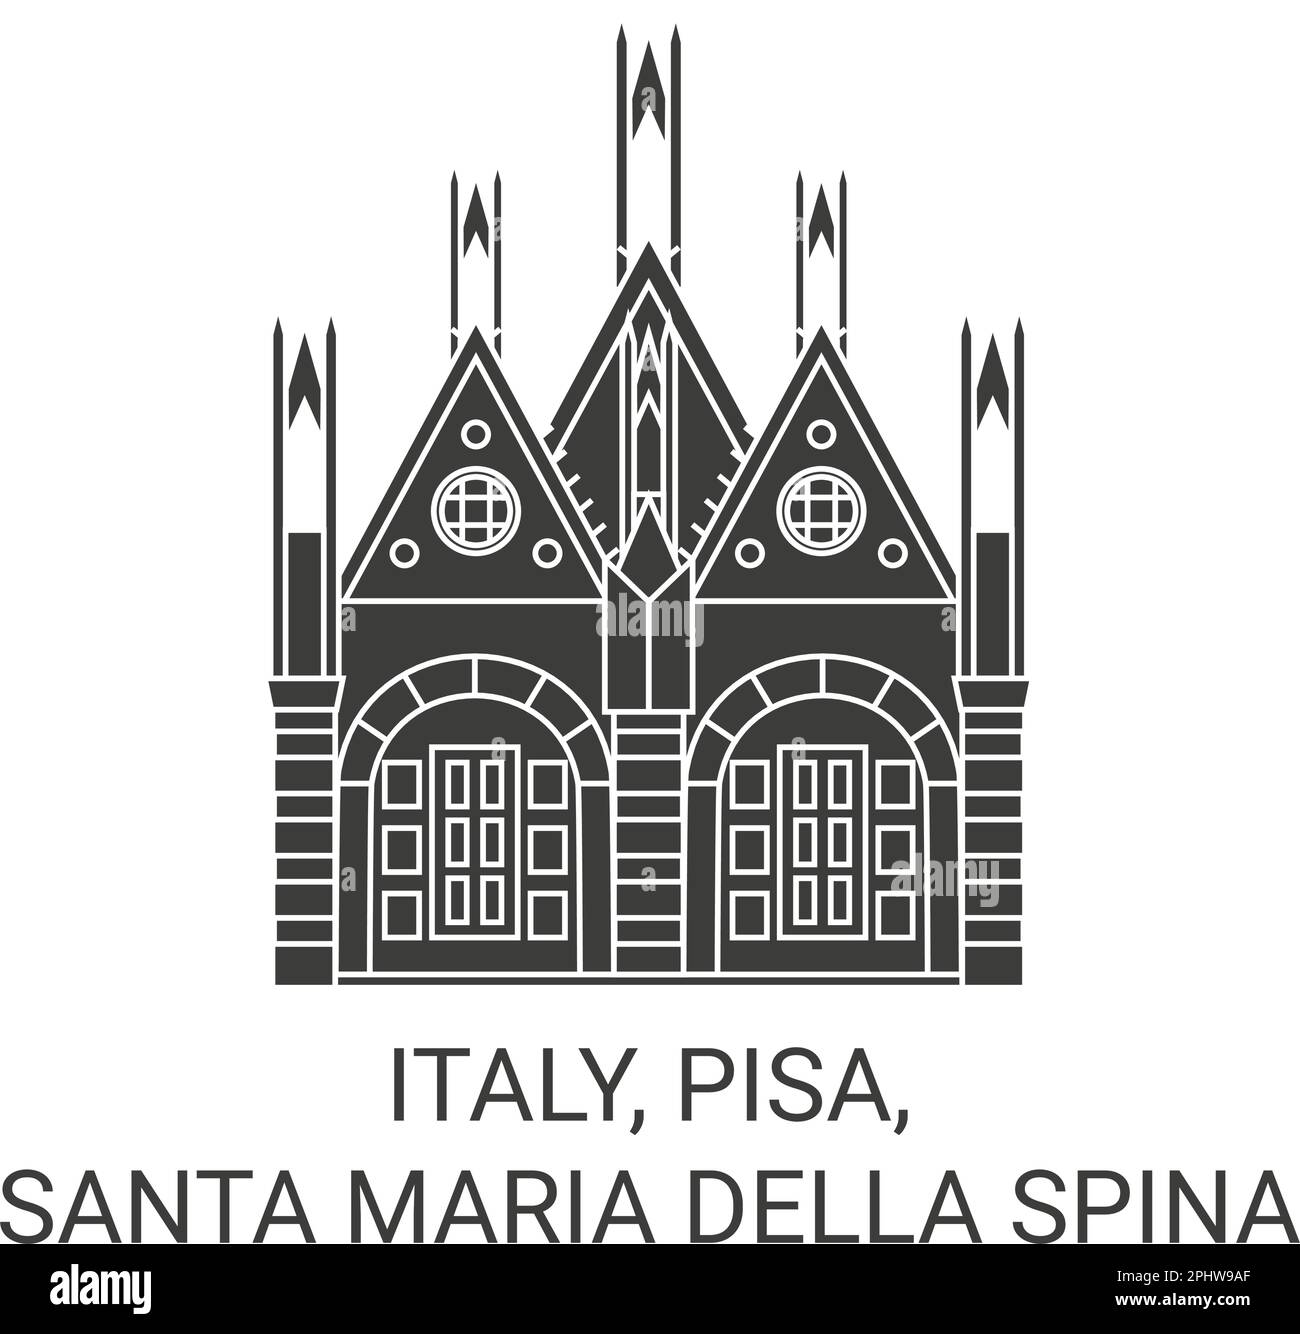 Italien, Pisa, Santa Maria della Spina reisen Wahrzeichen Vektordarstellung Stock Vektor